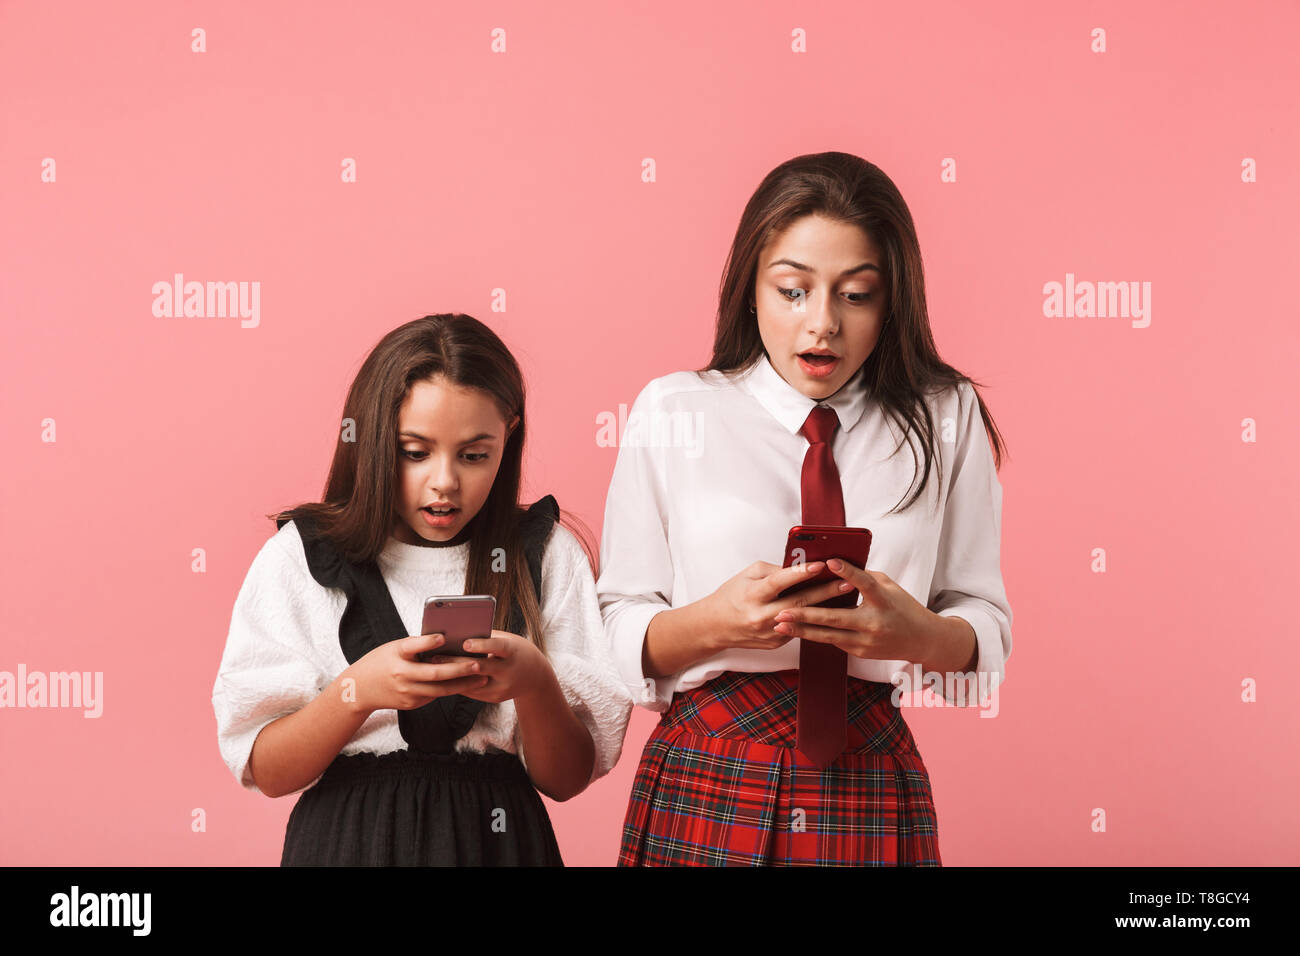 Ritratto di ragazze eccitato in uniforme scolastica utilizzando gli smartphone in piedi mentre isolate su sfondo rosso Foto Stock